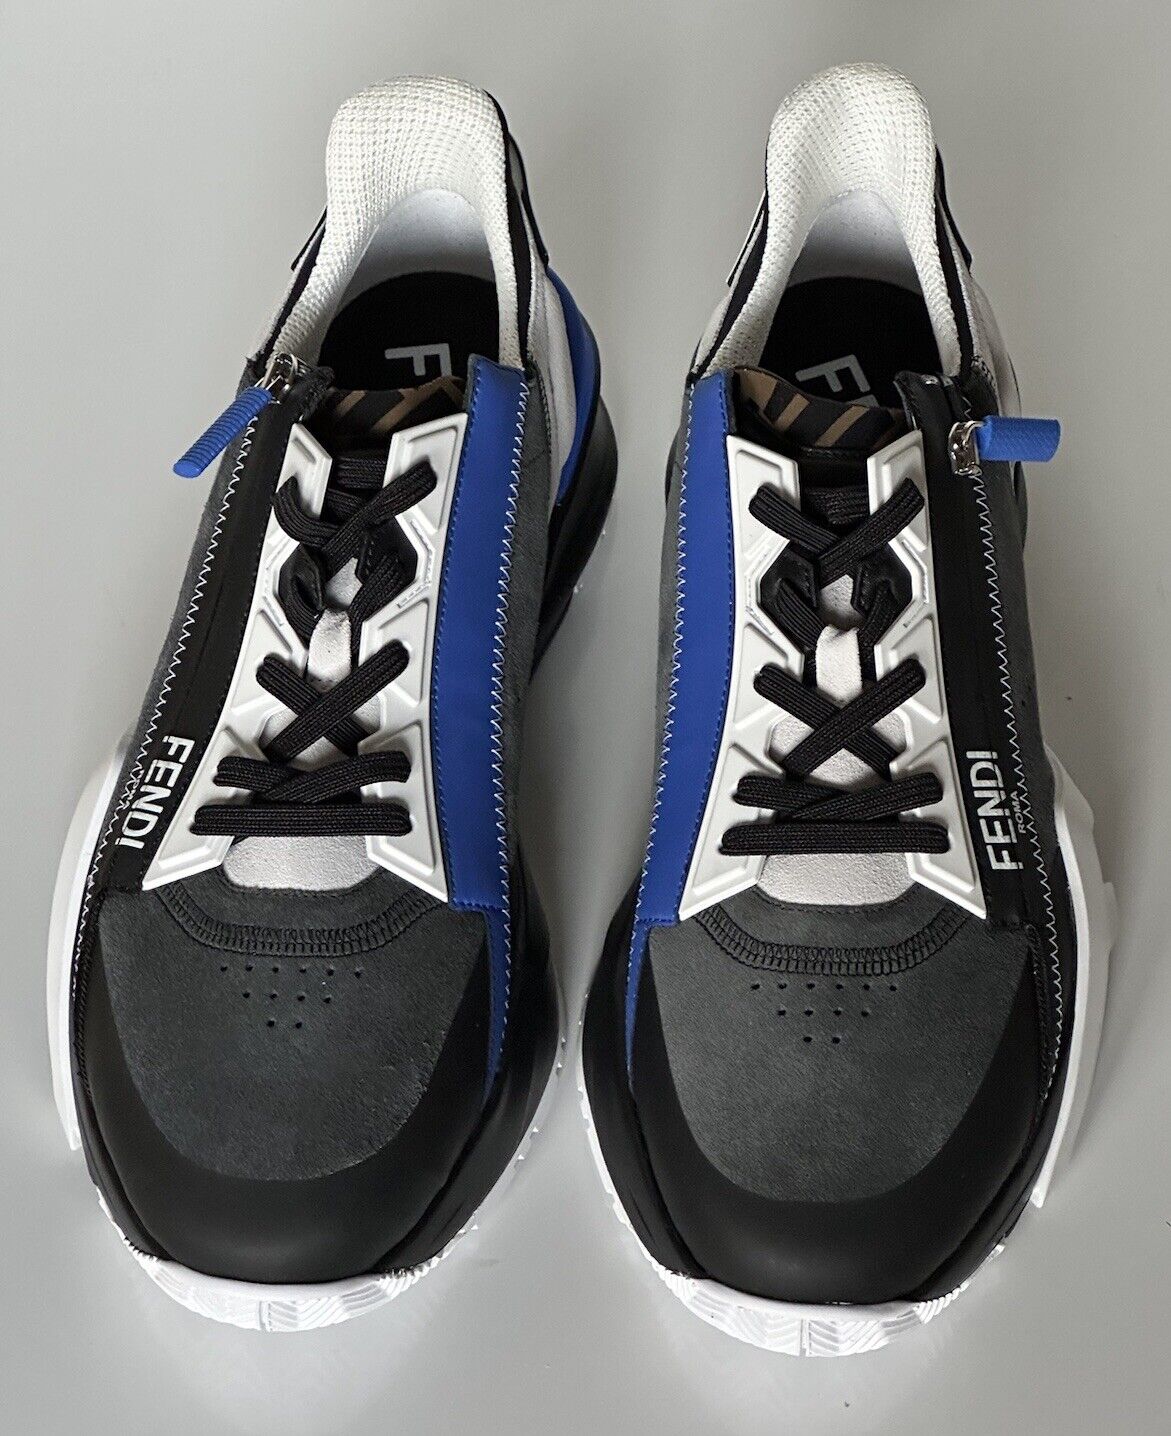 NIB 930 $ Fendi Flow Herren-Sneaker aus Leder/Stoff Schwarz/Blau 11 US (44) 7E1392